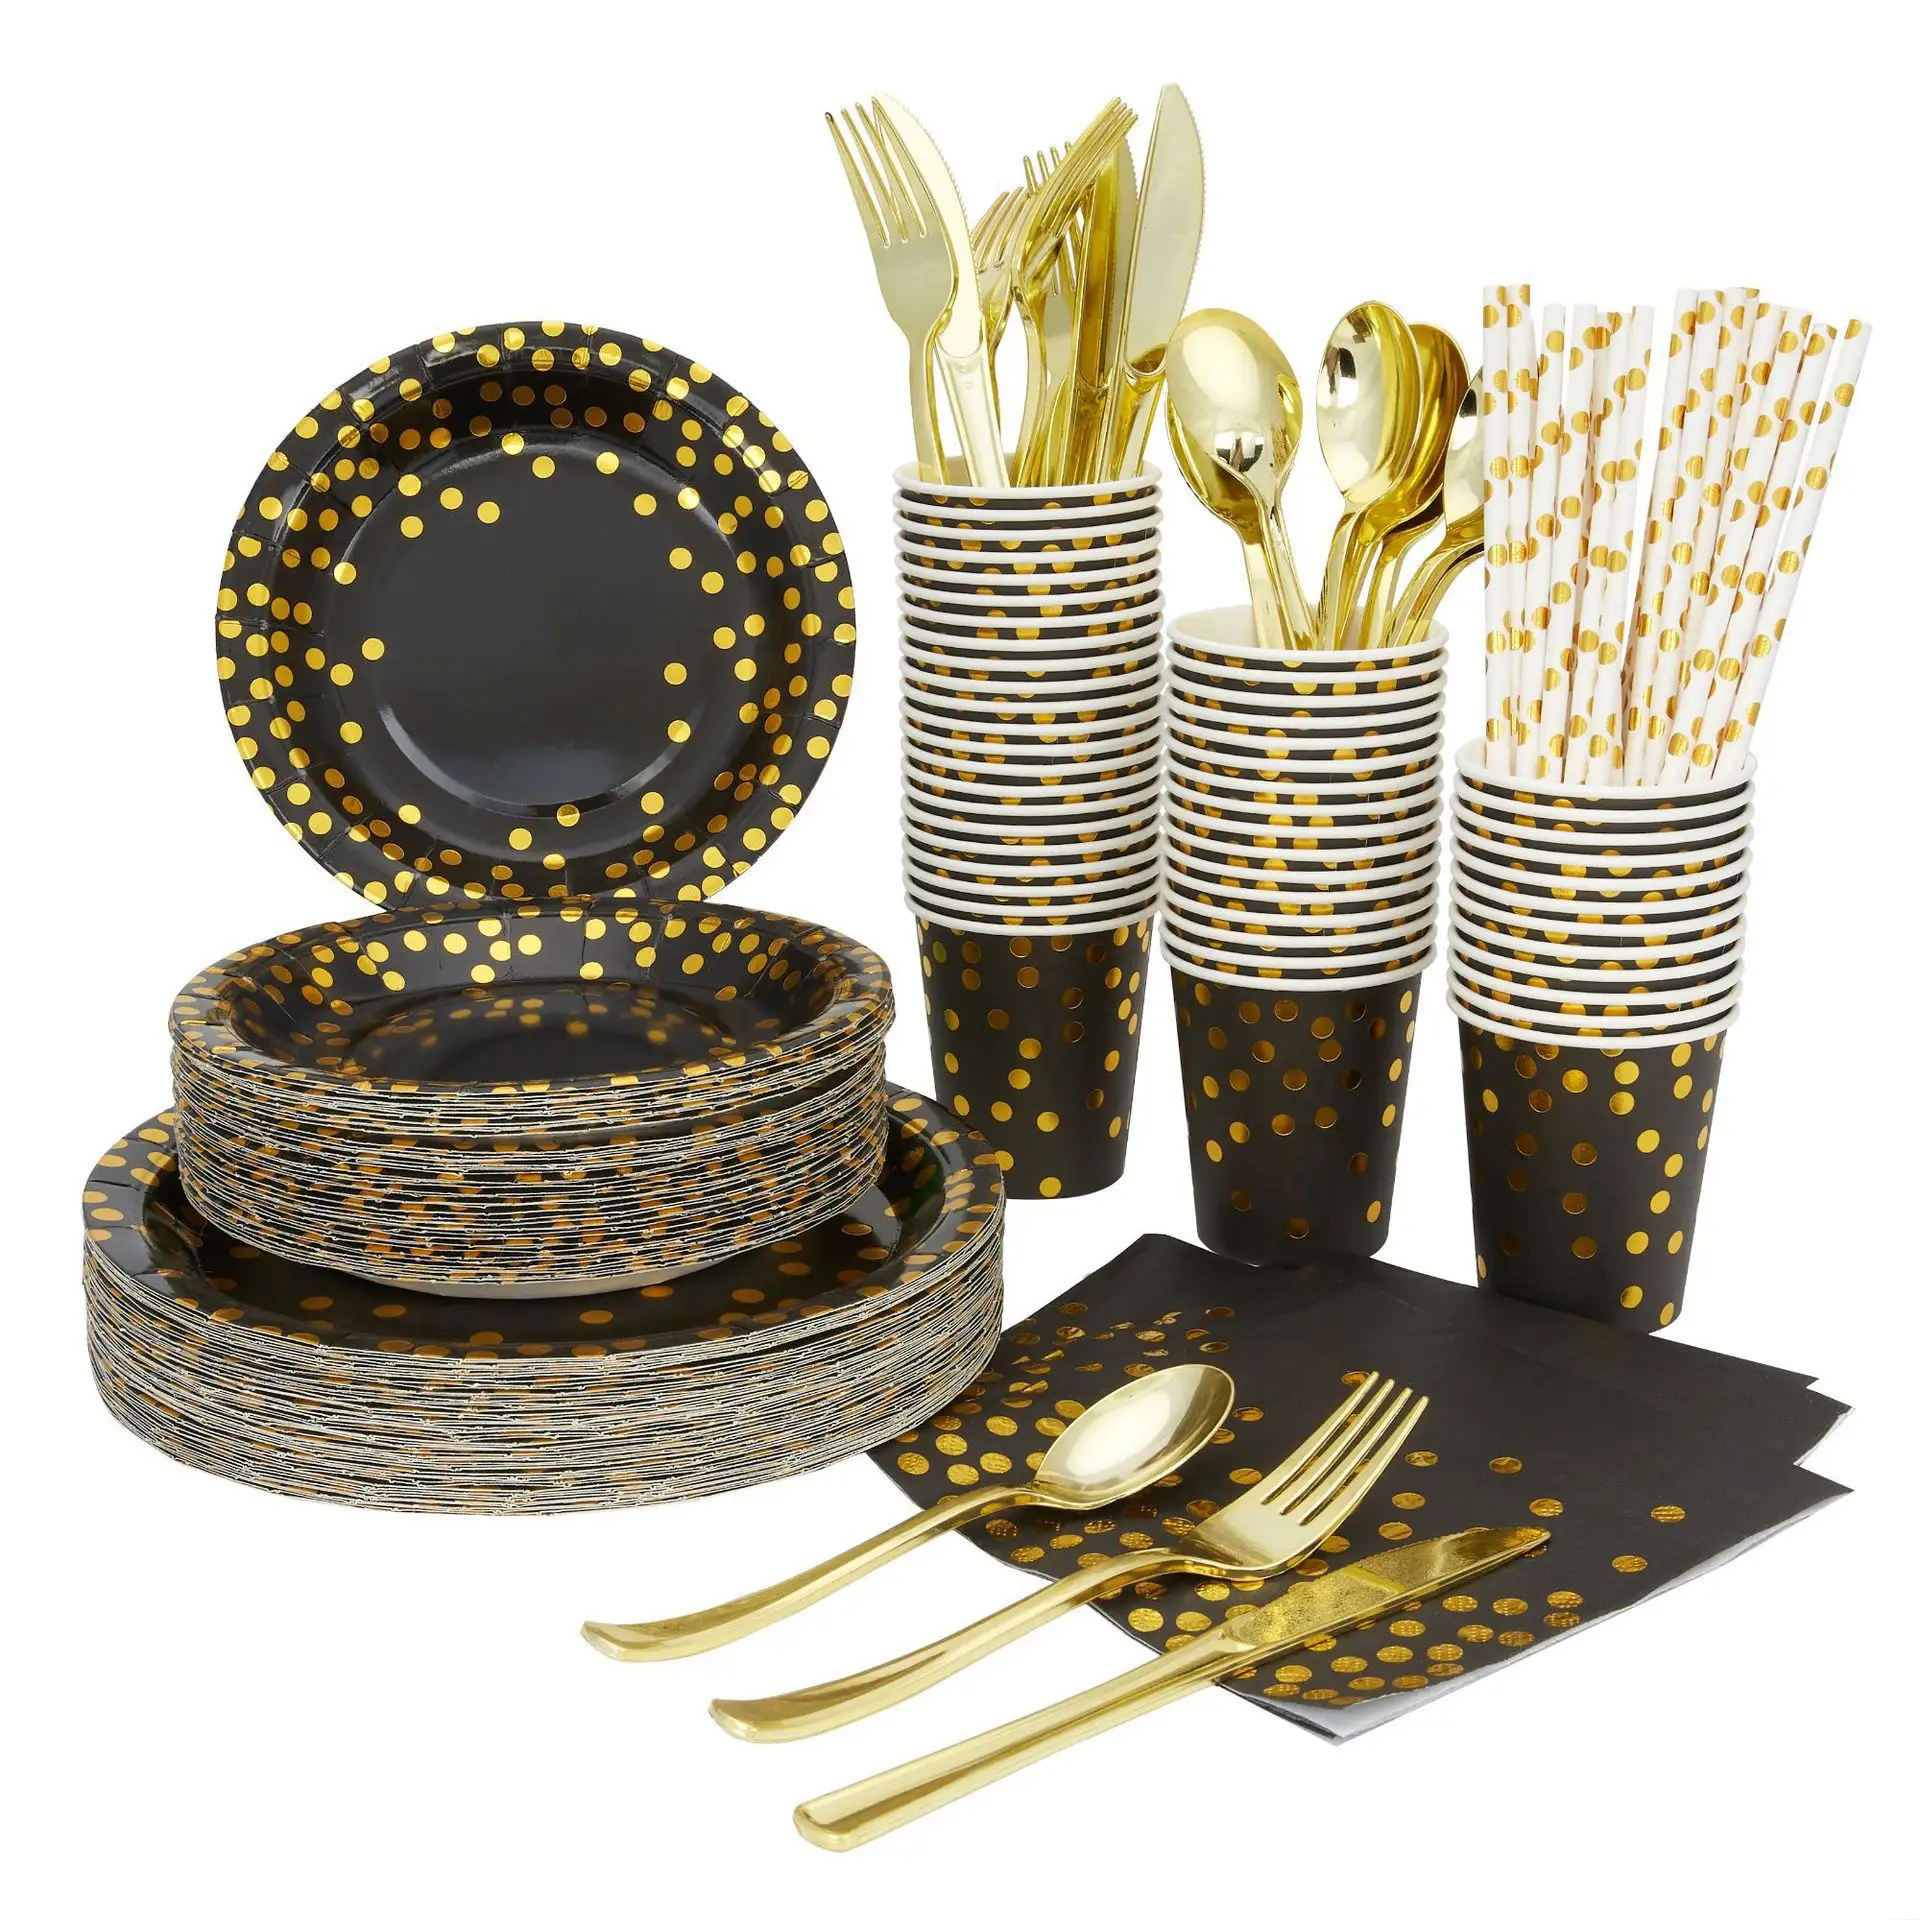 Plato de papel desechable con estampado de oro y negro, vasos, servilletas, platos de fiesta, juego de vajilla, suministros para fiestas